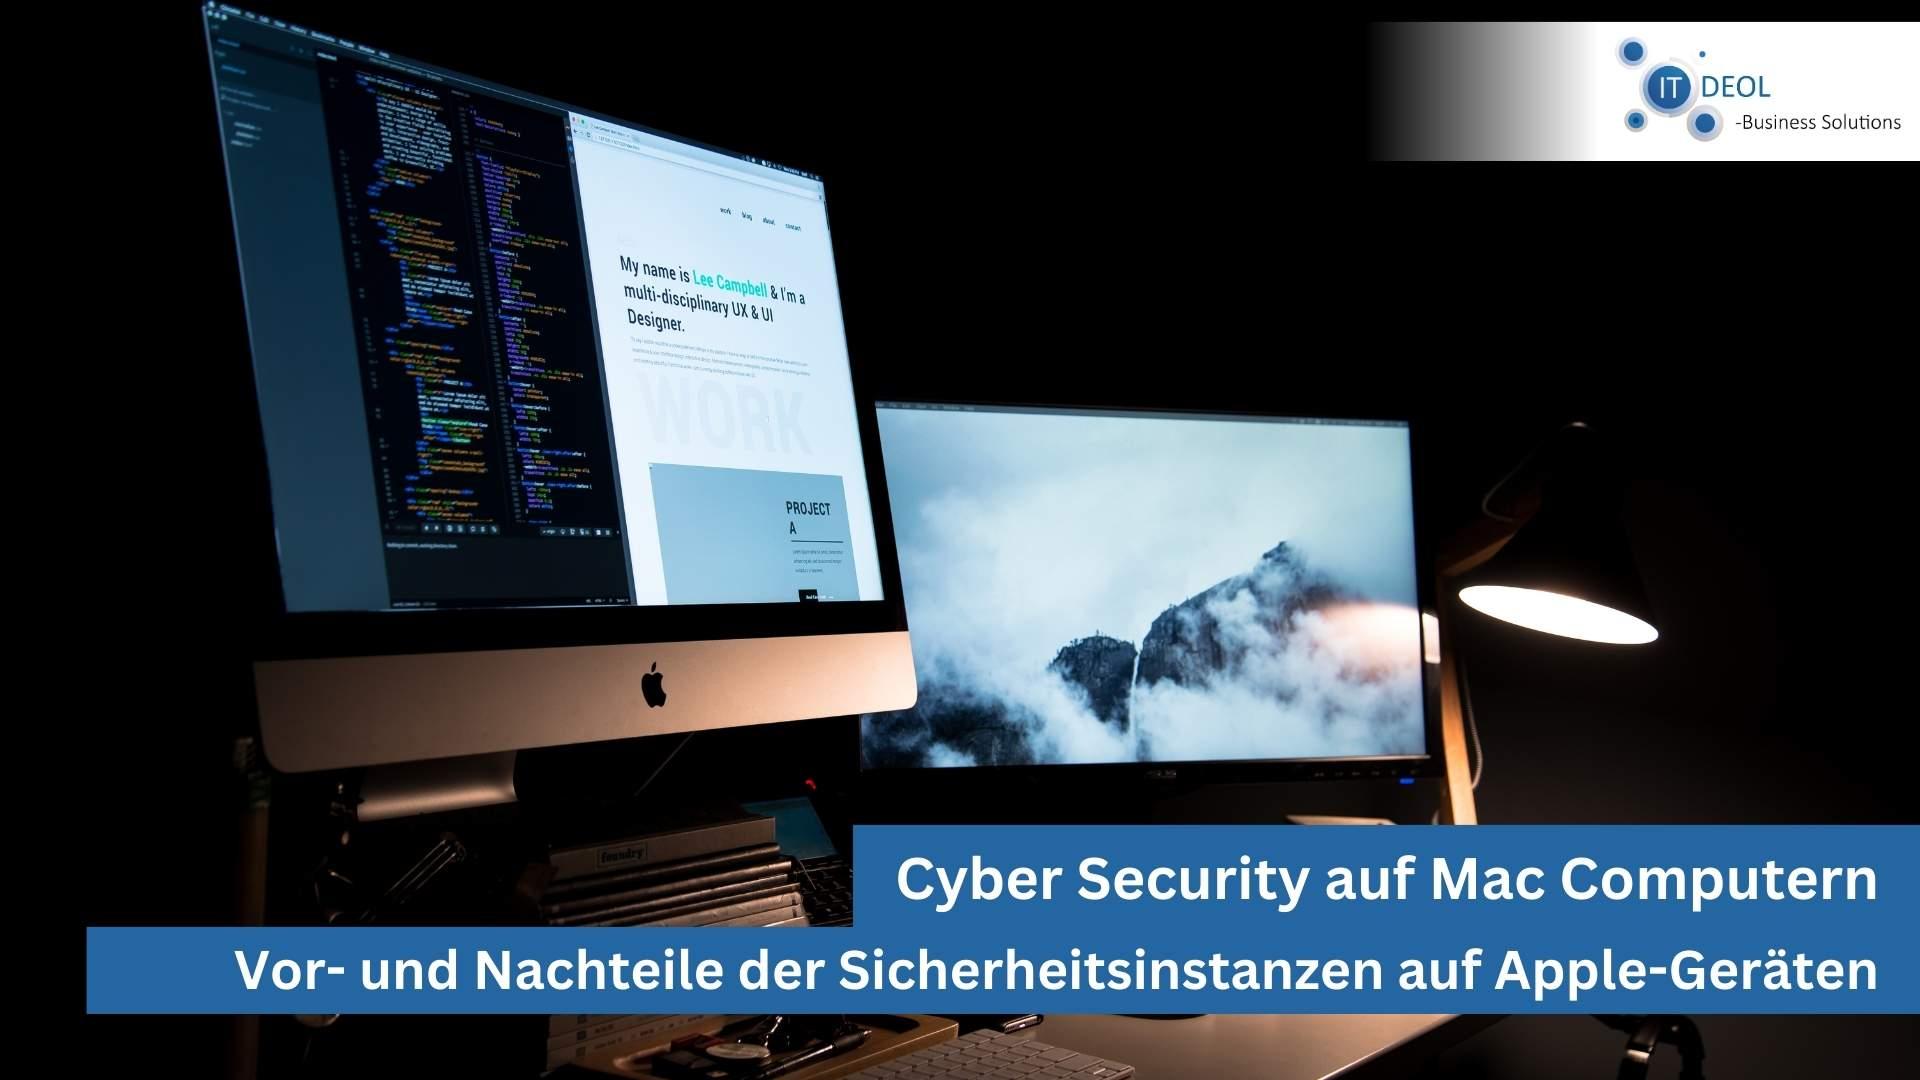 Cyber Security auf Mac Computern – Wie gut sind die Sicherheitsinstanzen wirklich?